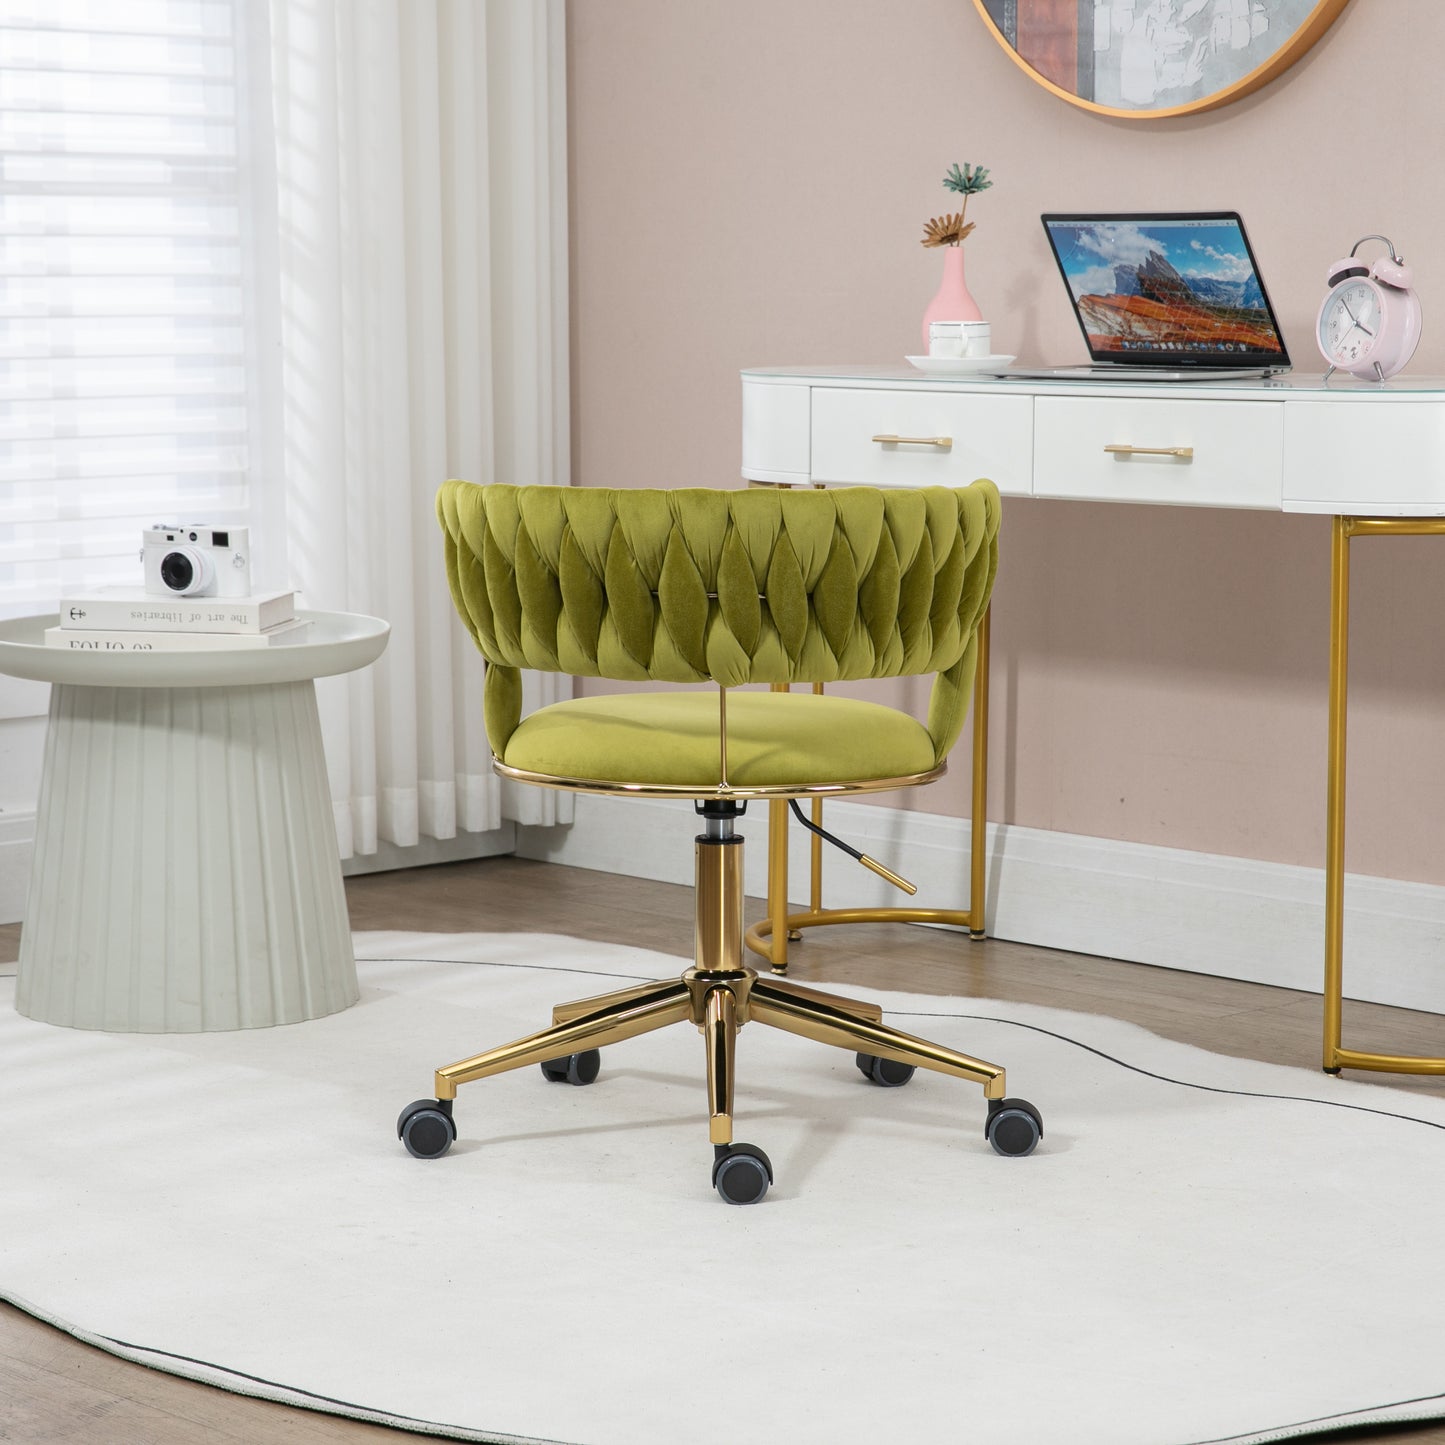 Olive Elegance: The COOLMORE Desk Chair